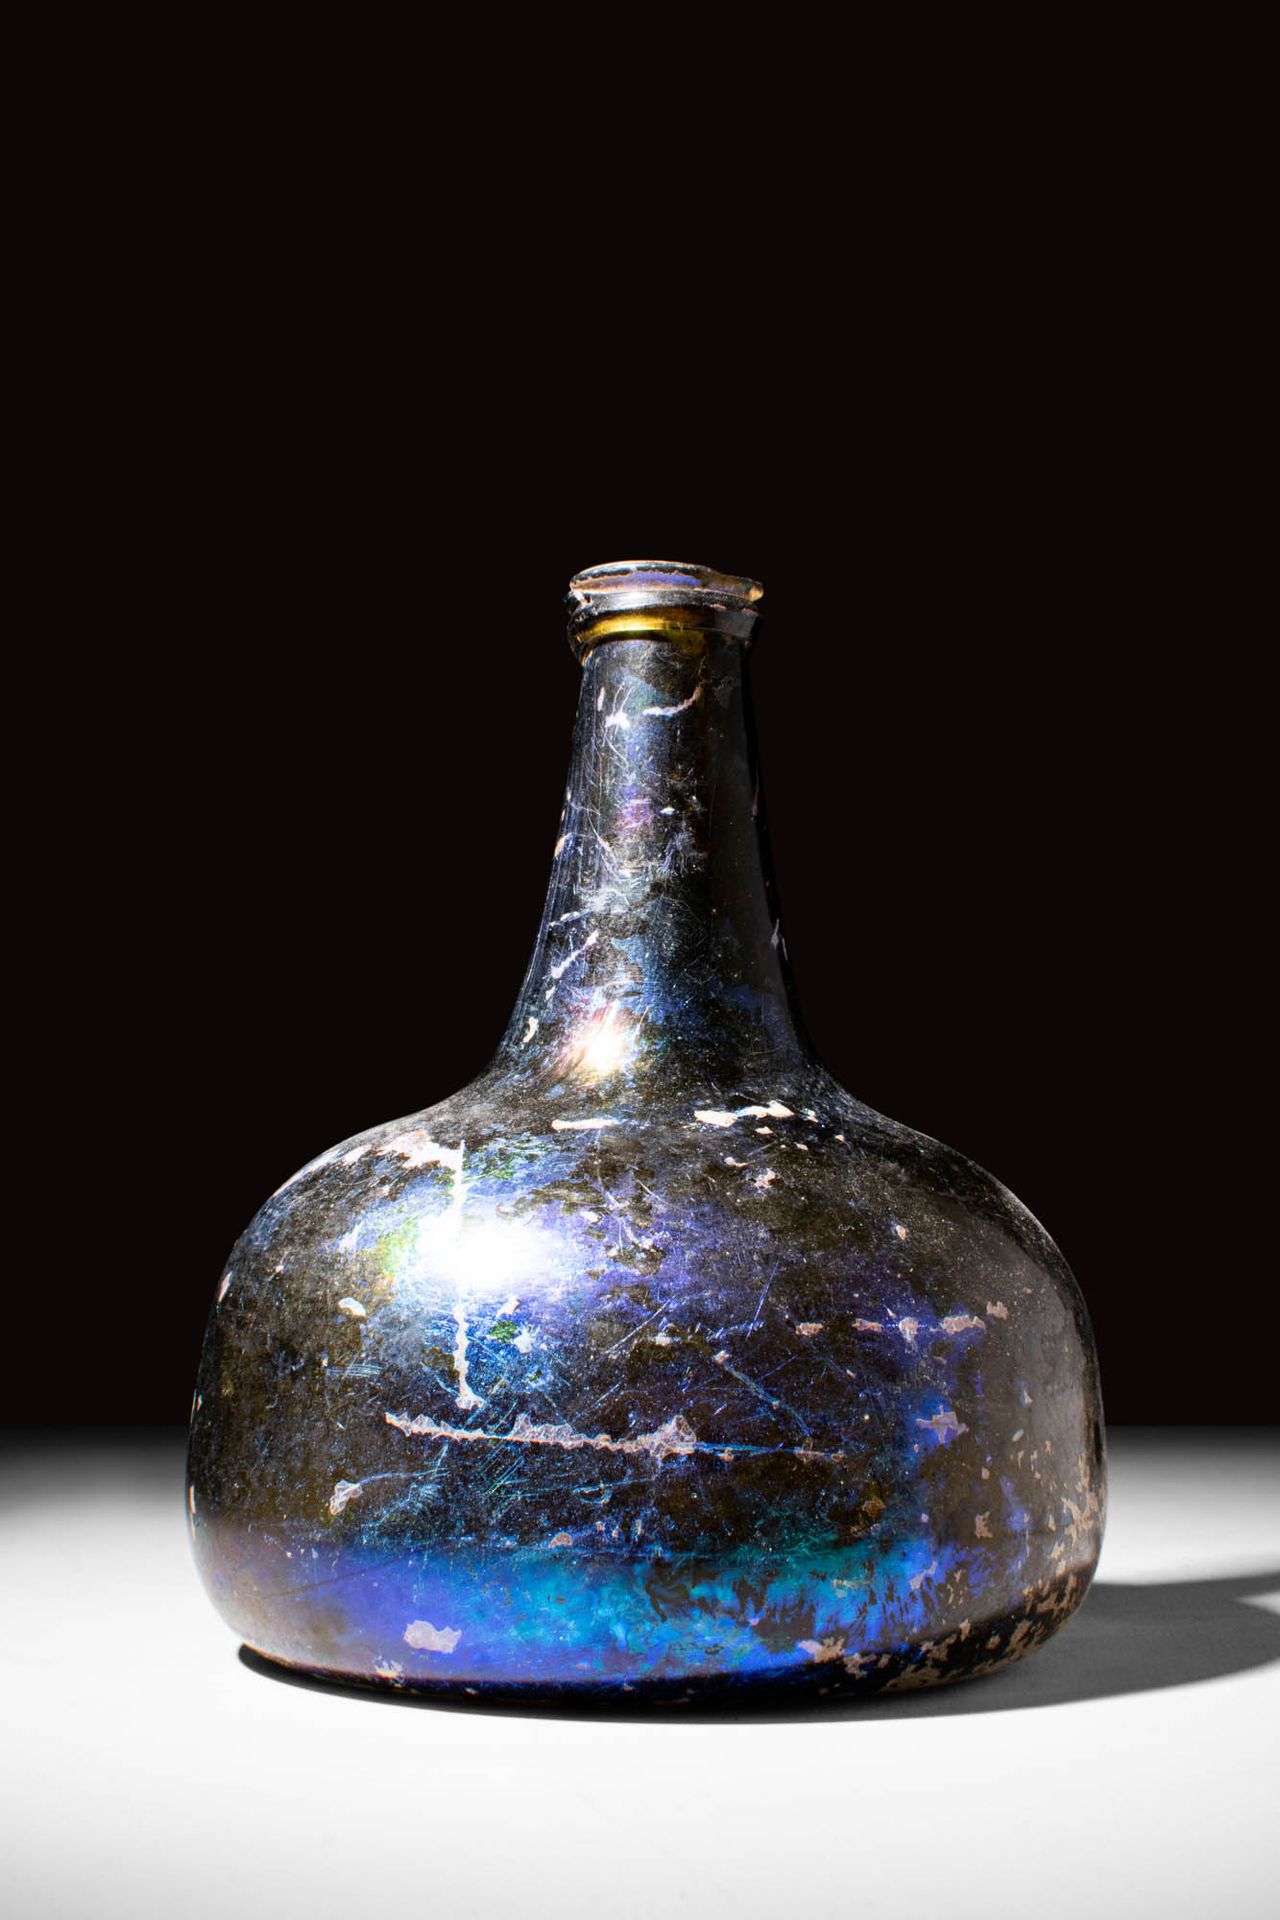 POST MEDIEVAL BLUE GLASS WINE OR RUM BOTTLE Ca.公元 1400 - 1700 年。
这是一件中世纪后的蓝色玻璃酒瓶&hellip;